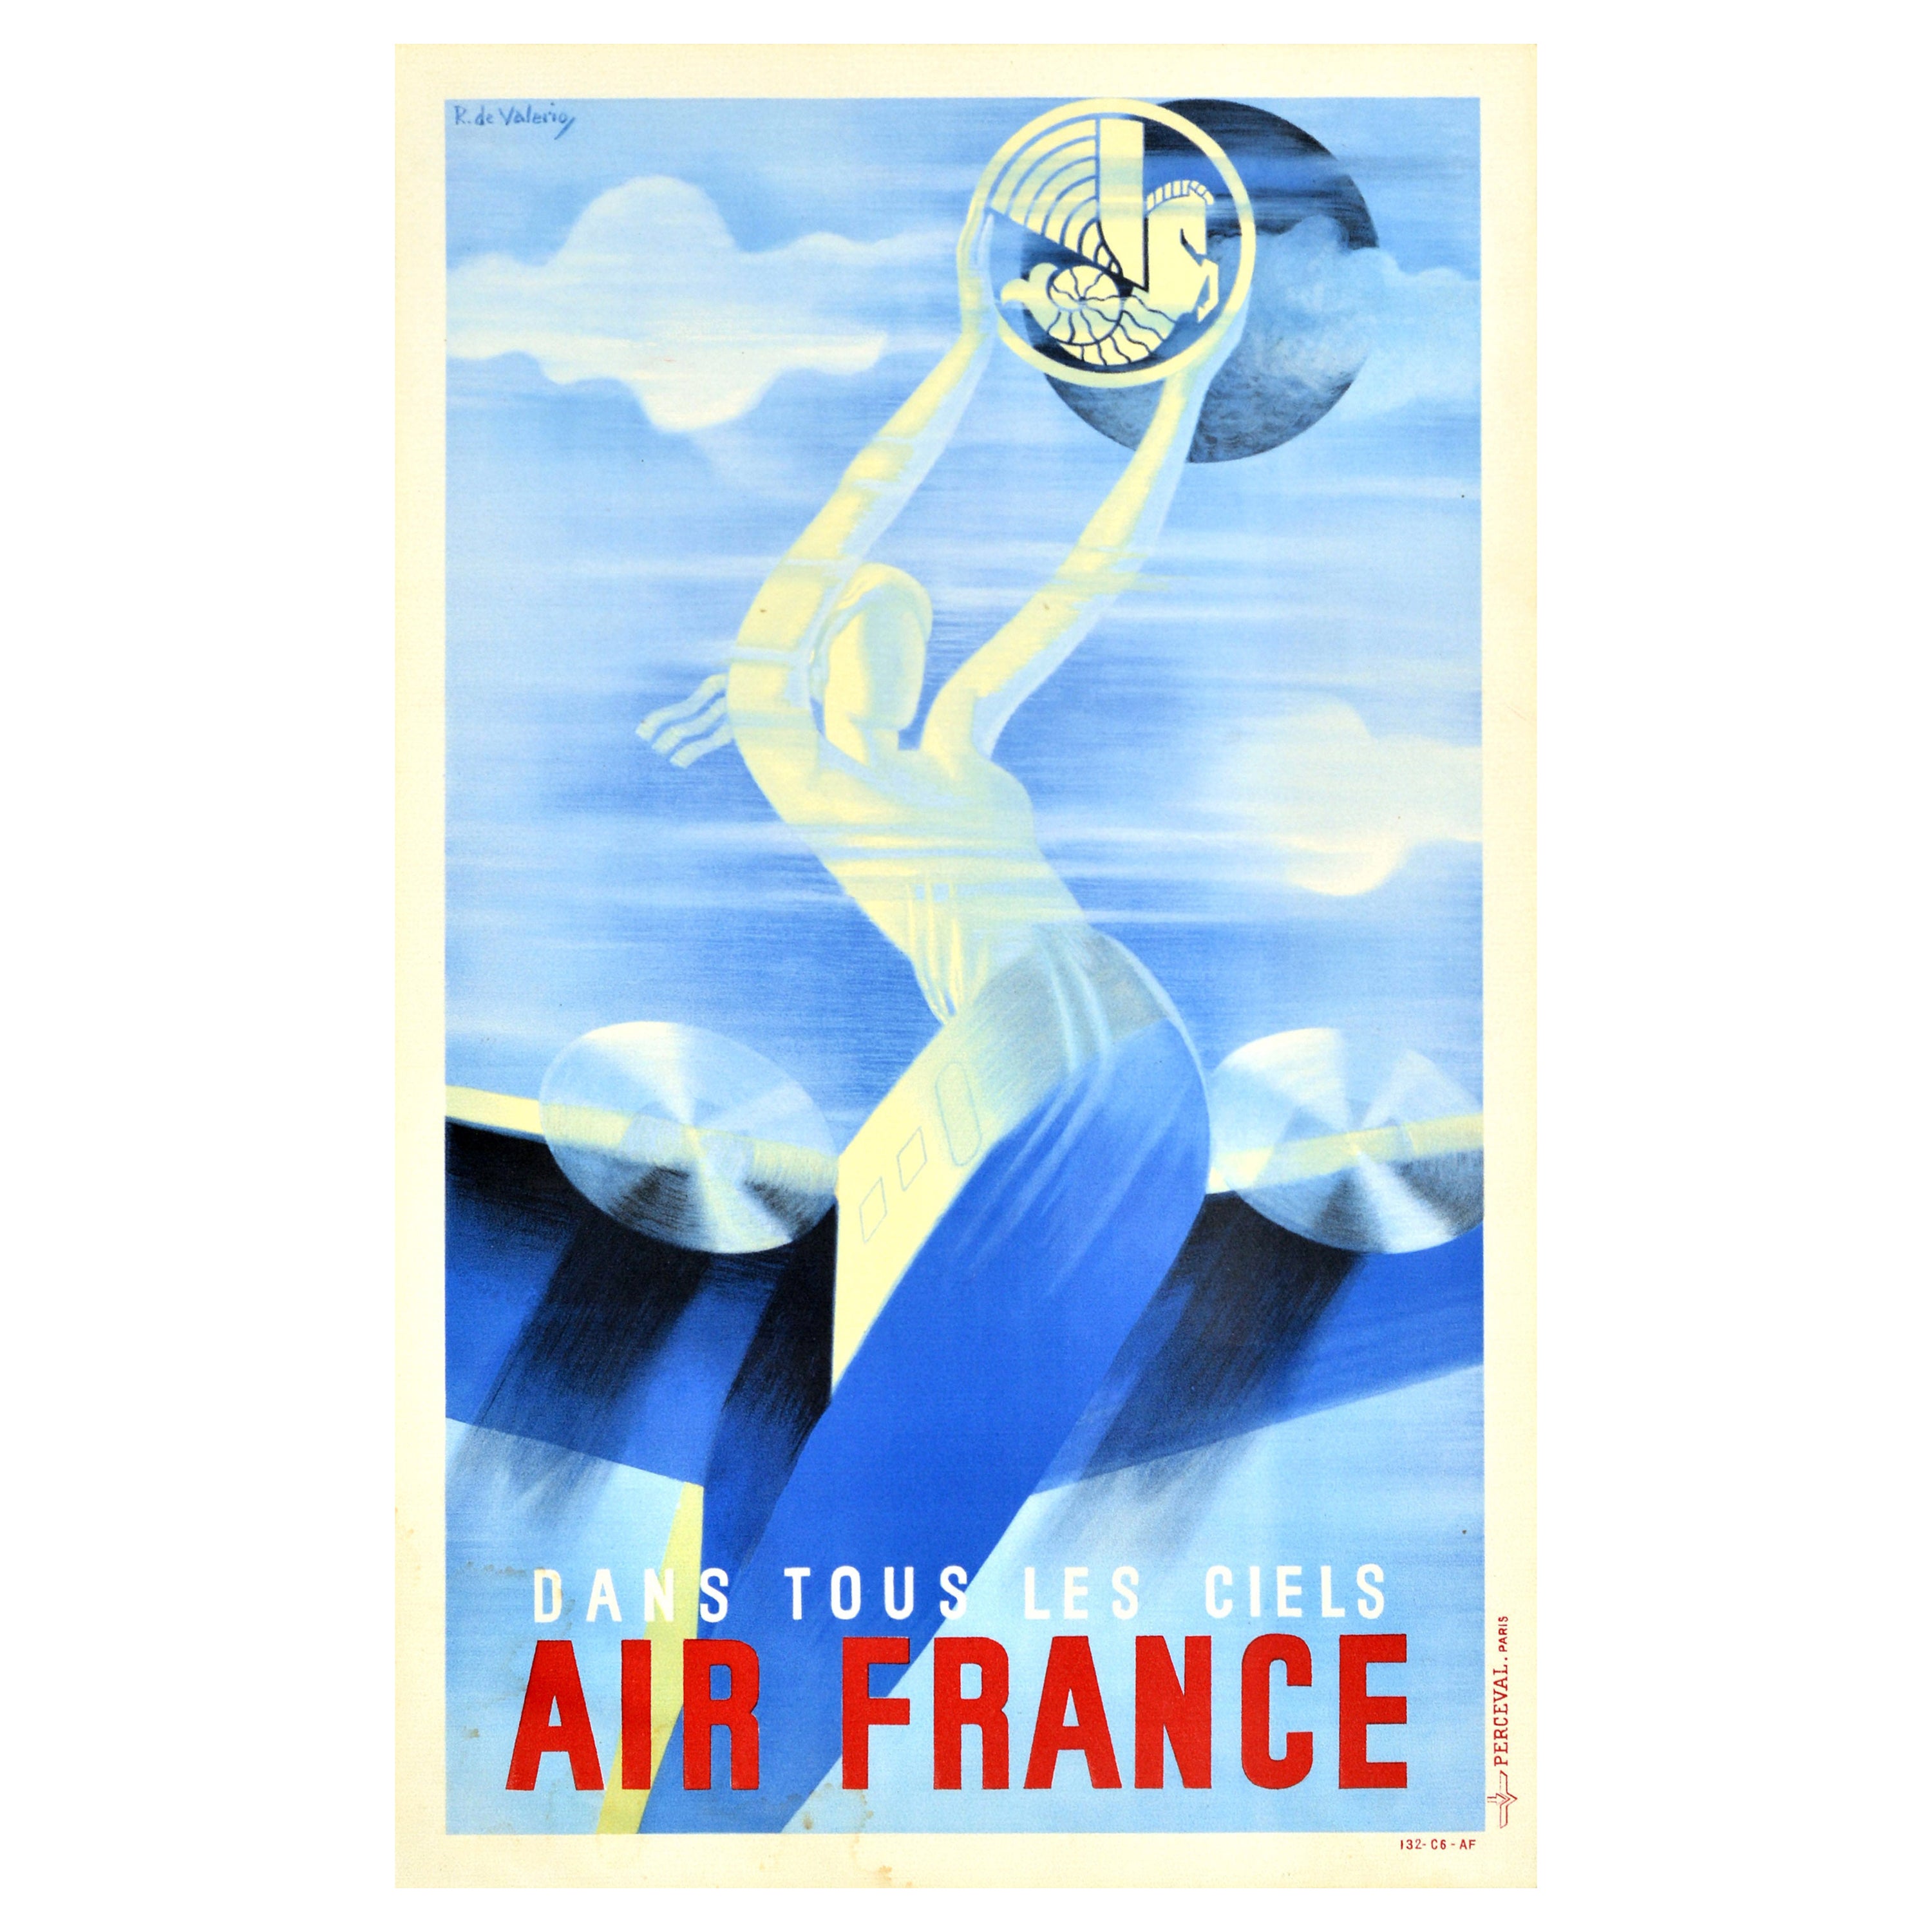 Original Vintage Travel Poster Air France Airways In All Skies Roger De Valerio